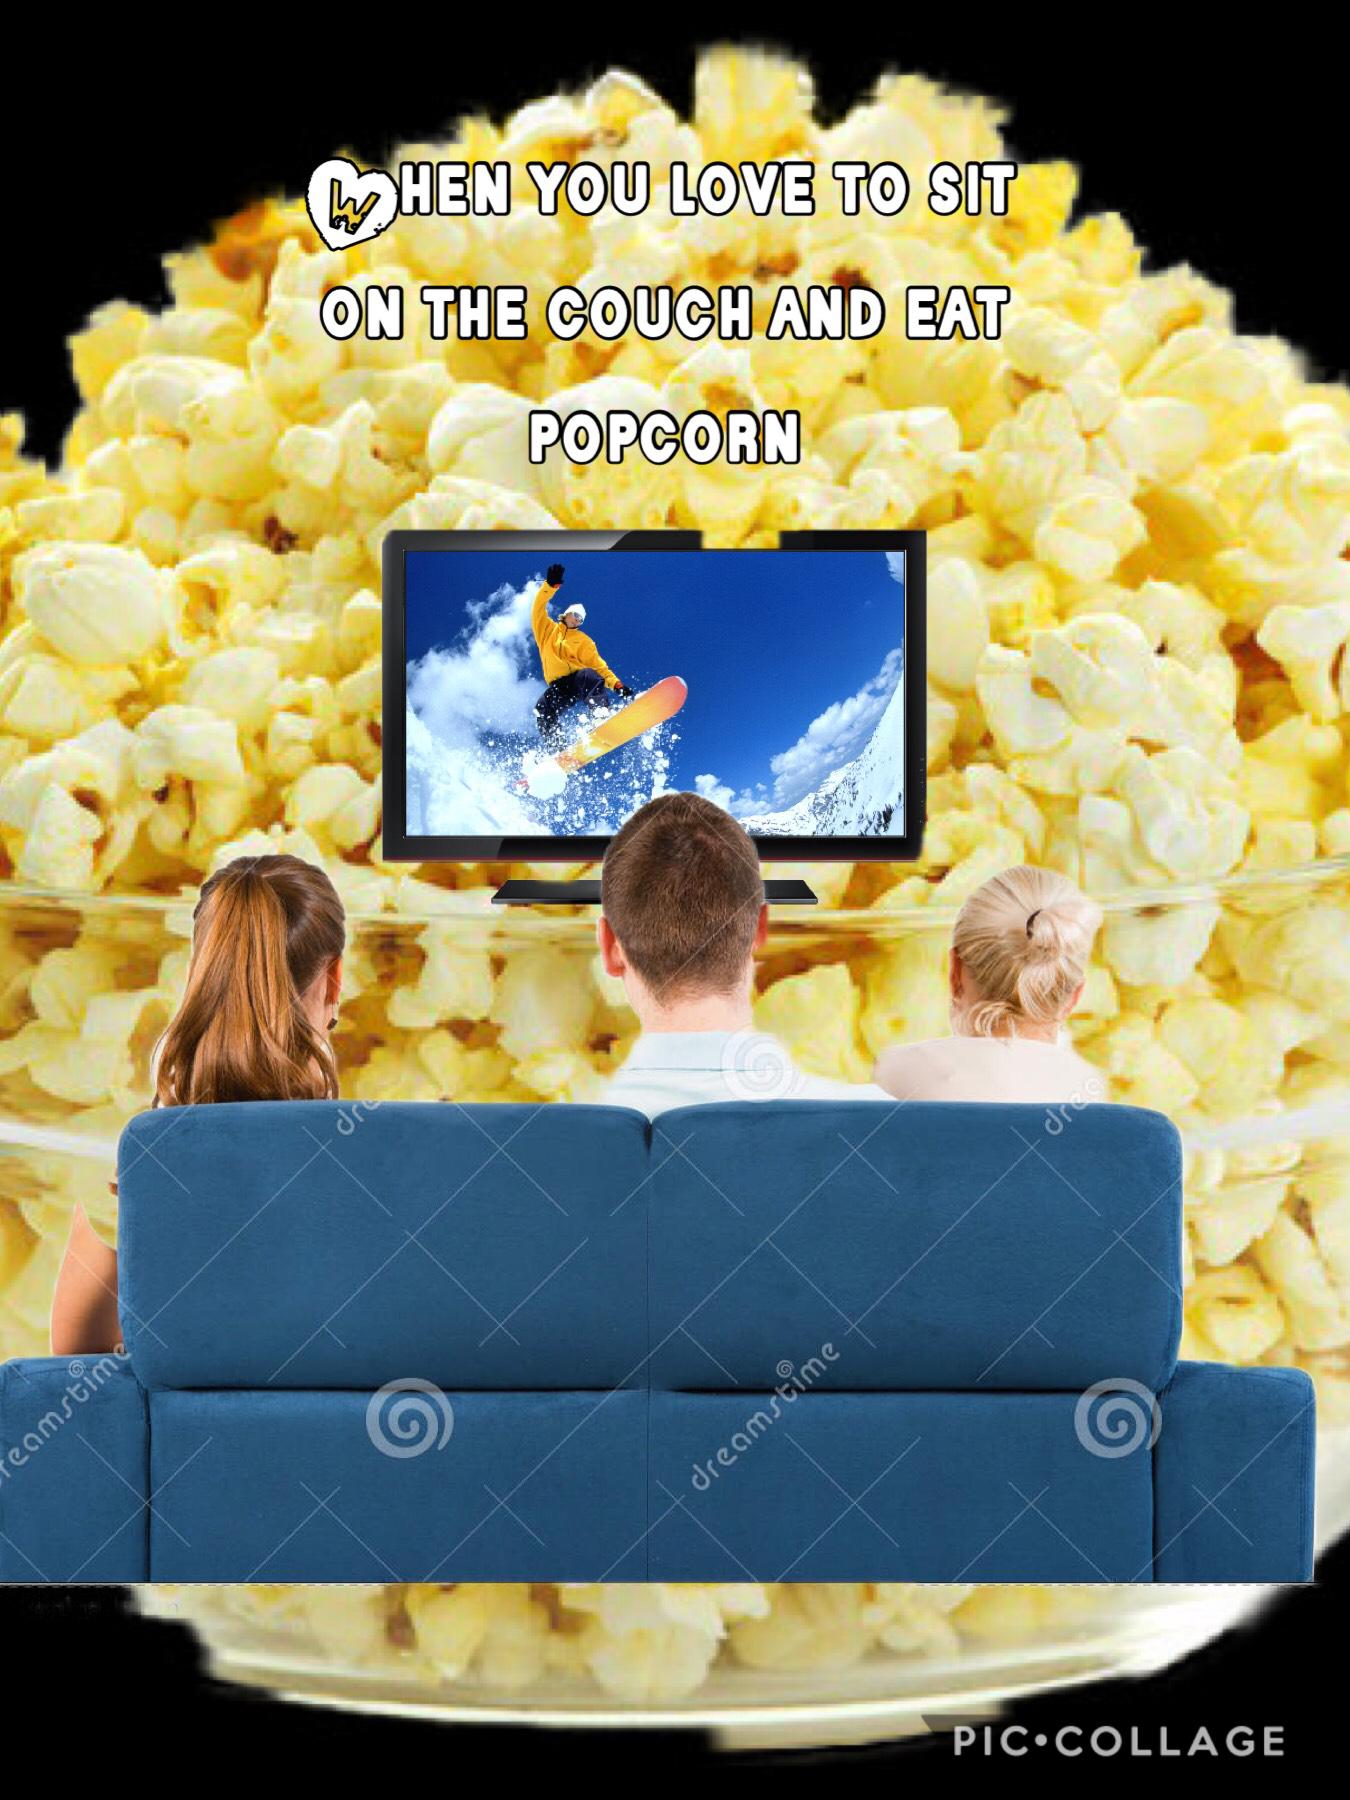 Popcorn is amazing 🍿